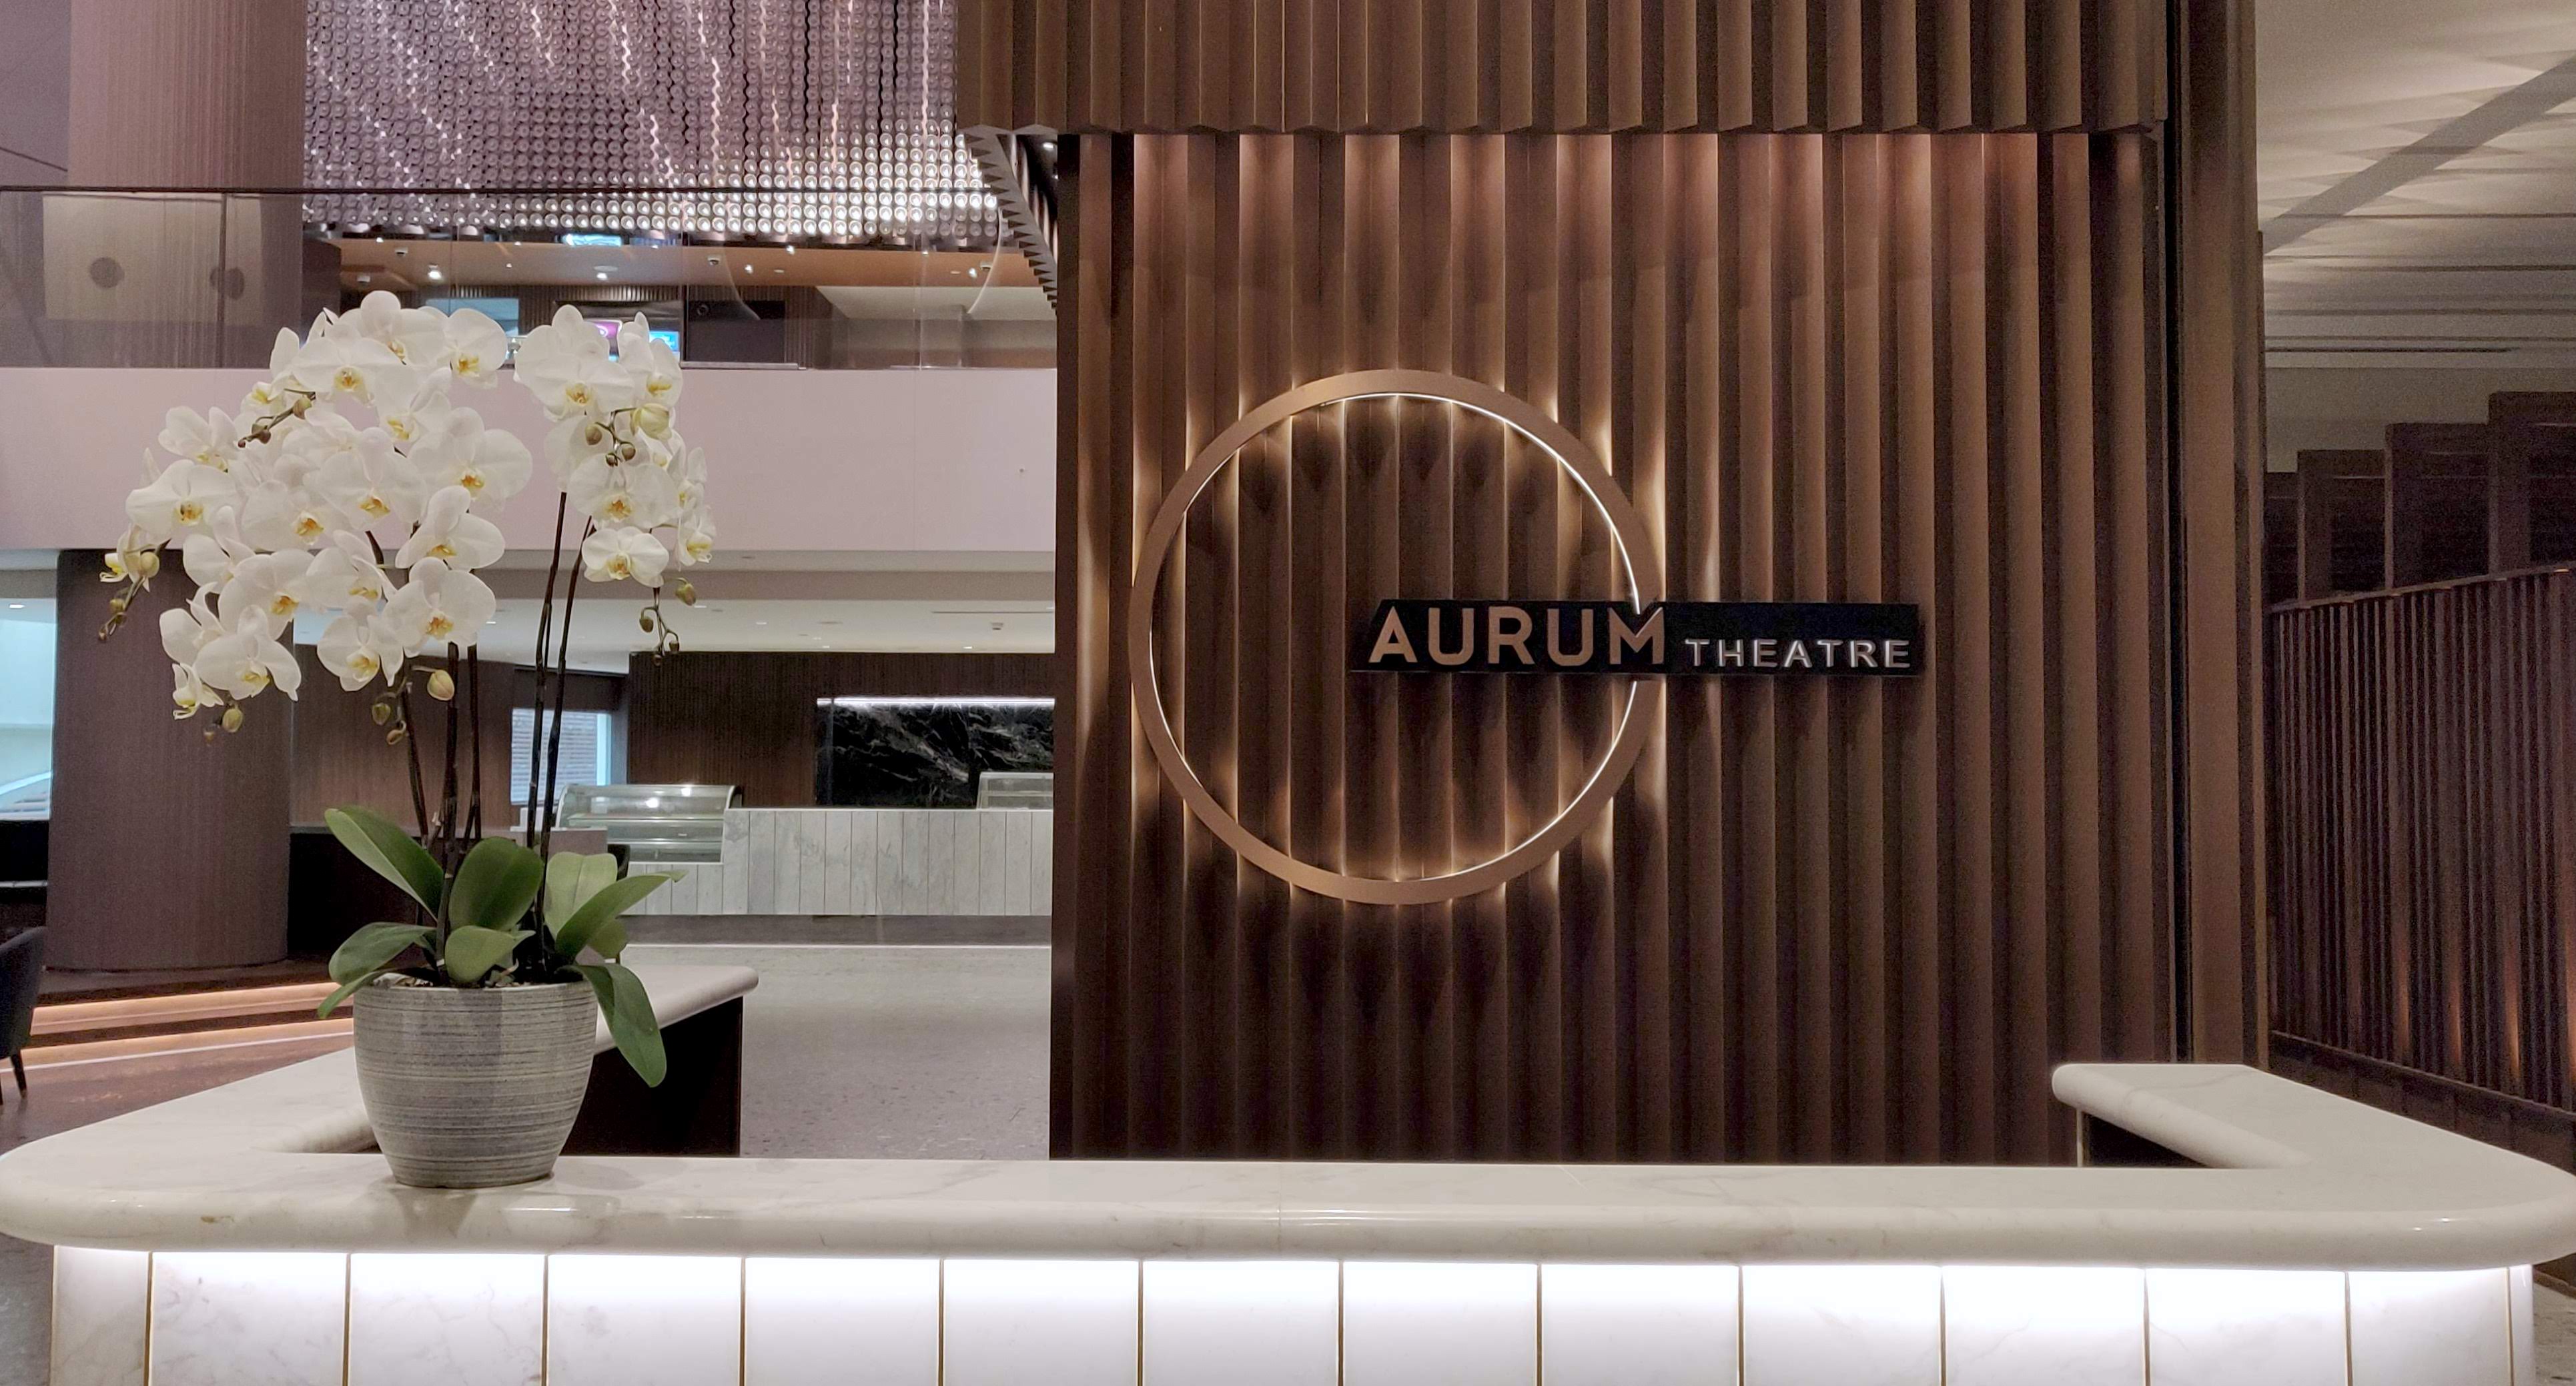 Aurum theatre price malaysia